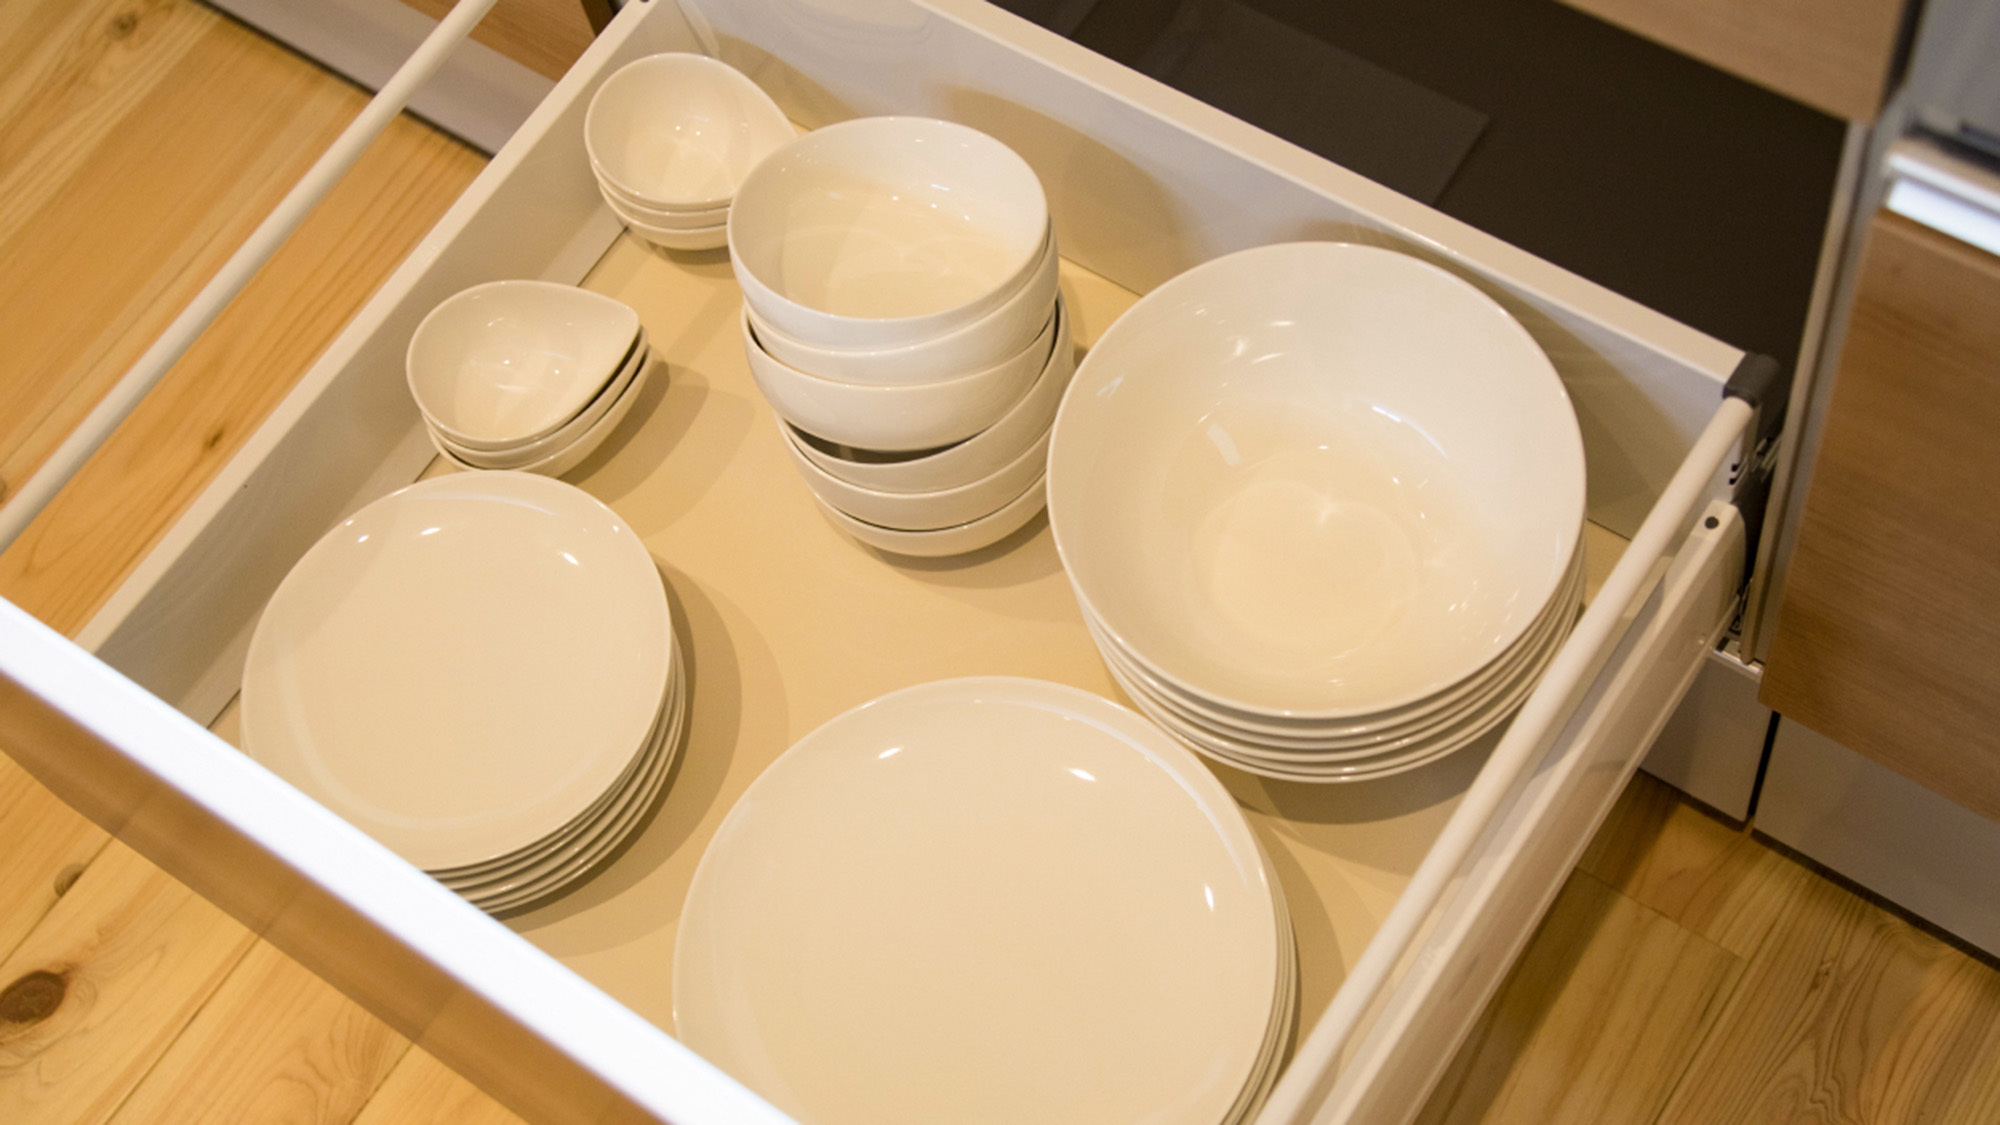 ・【お皿】深皿や平皿等、多数取り揃えております。